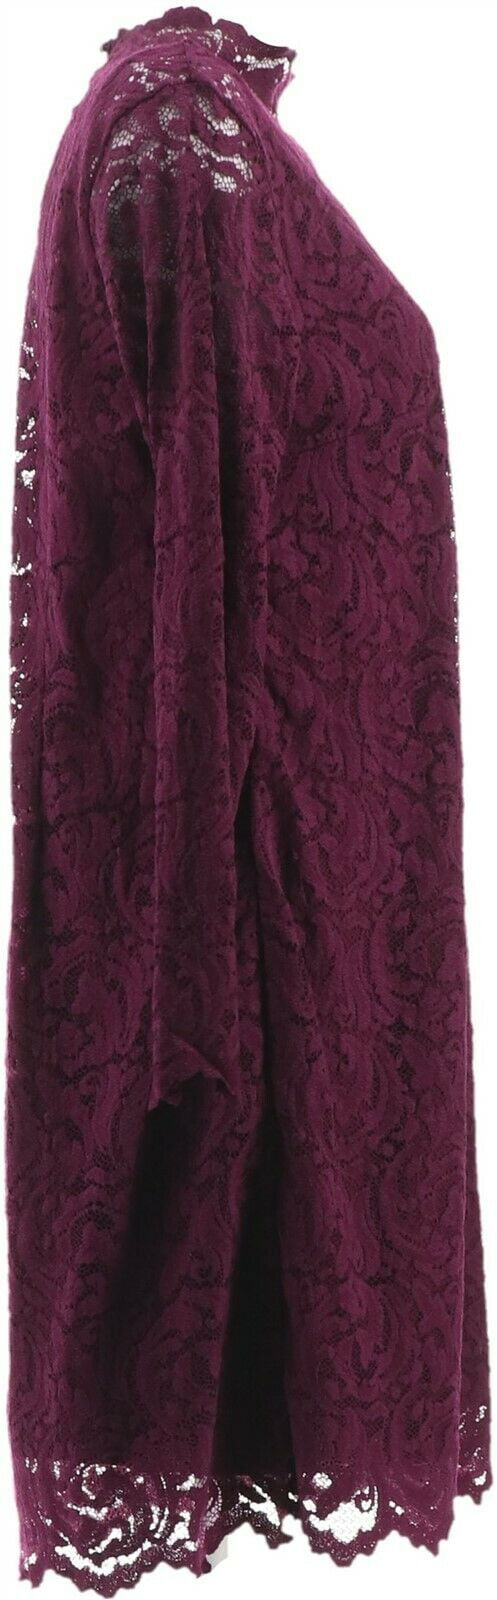 Isaac Mizrahi Lace Mock-Neck Knit Dress Black S NEW A343265 